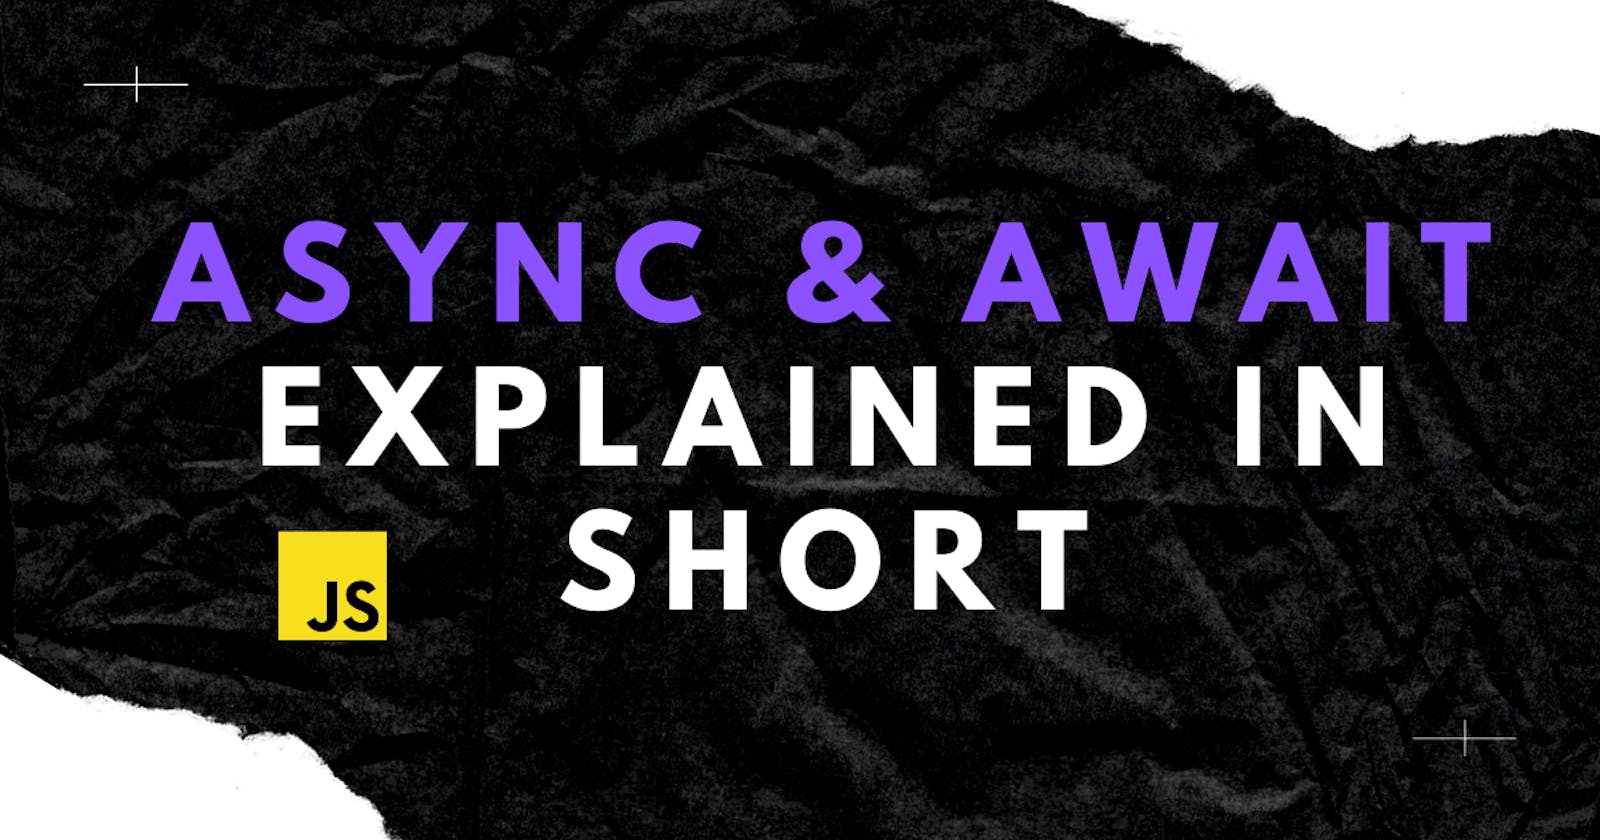 Async & await explained in short